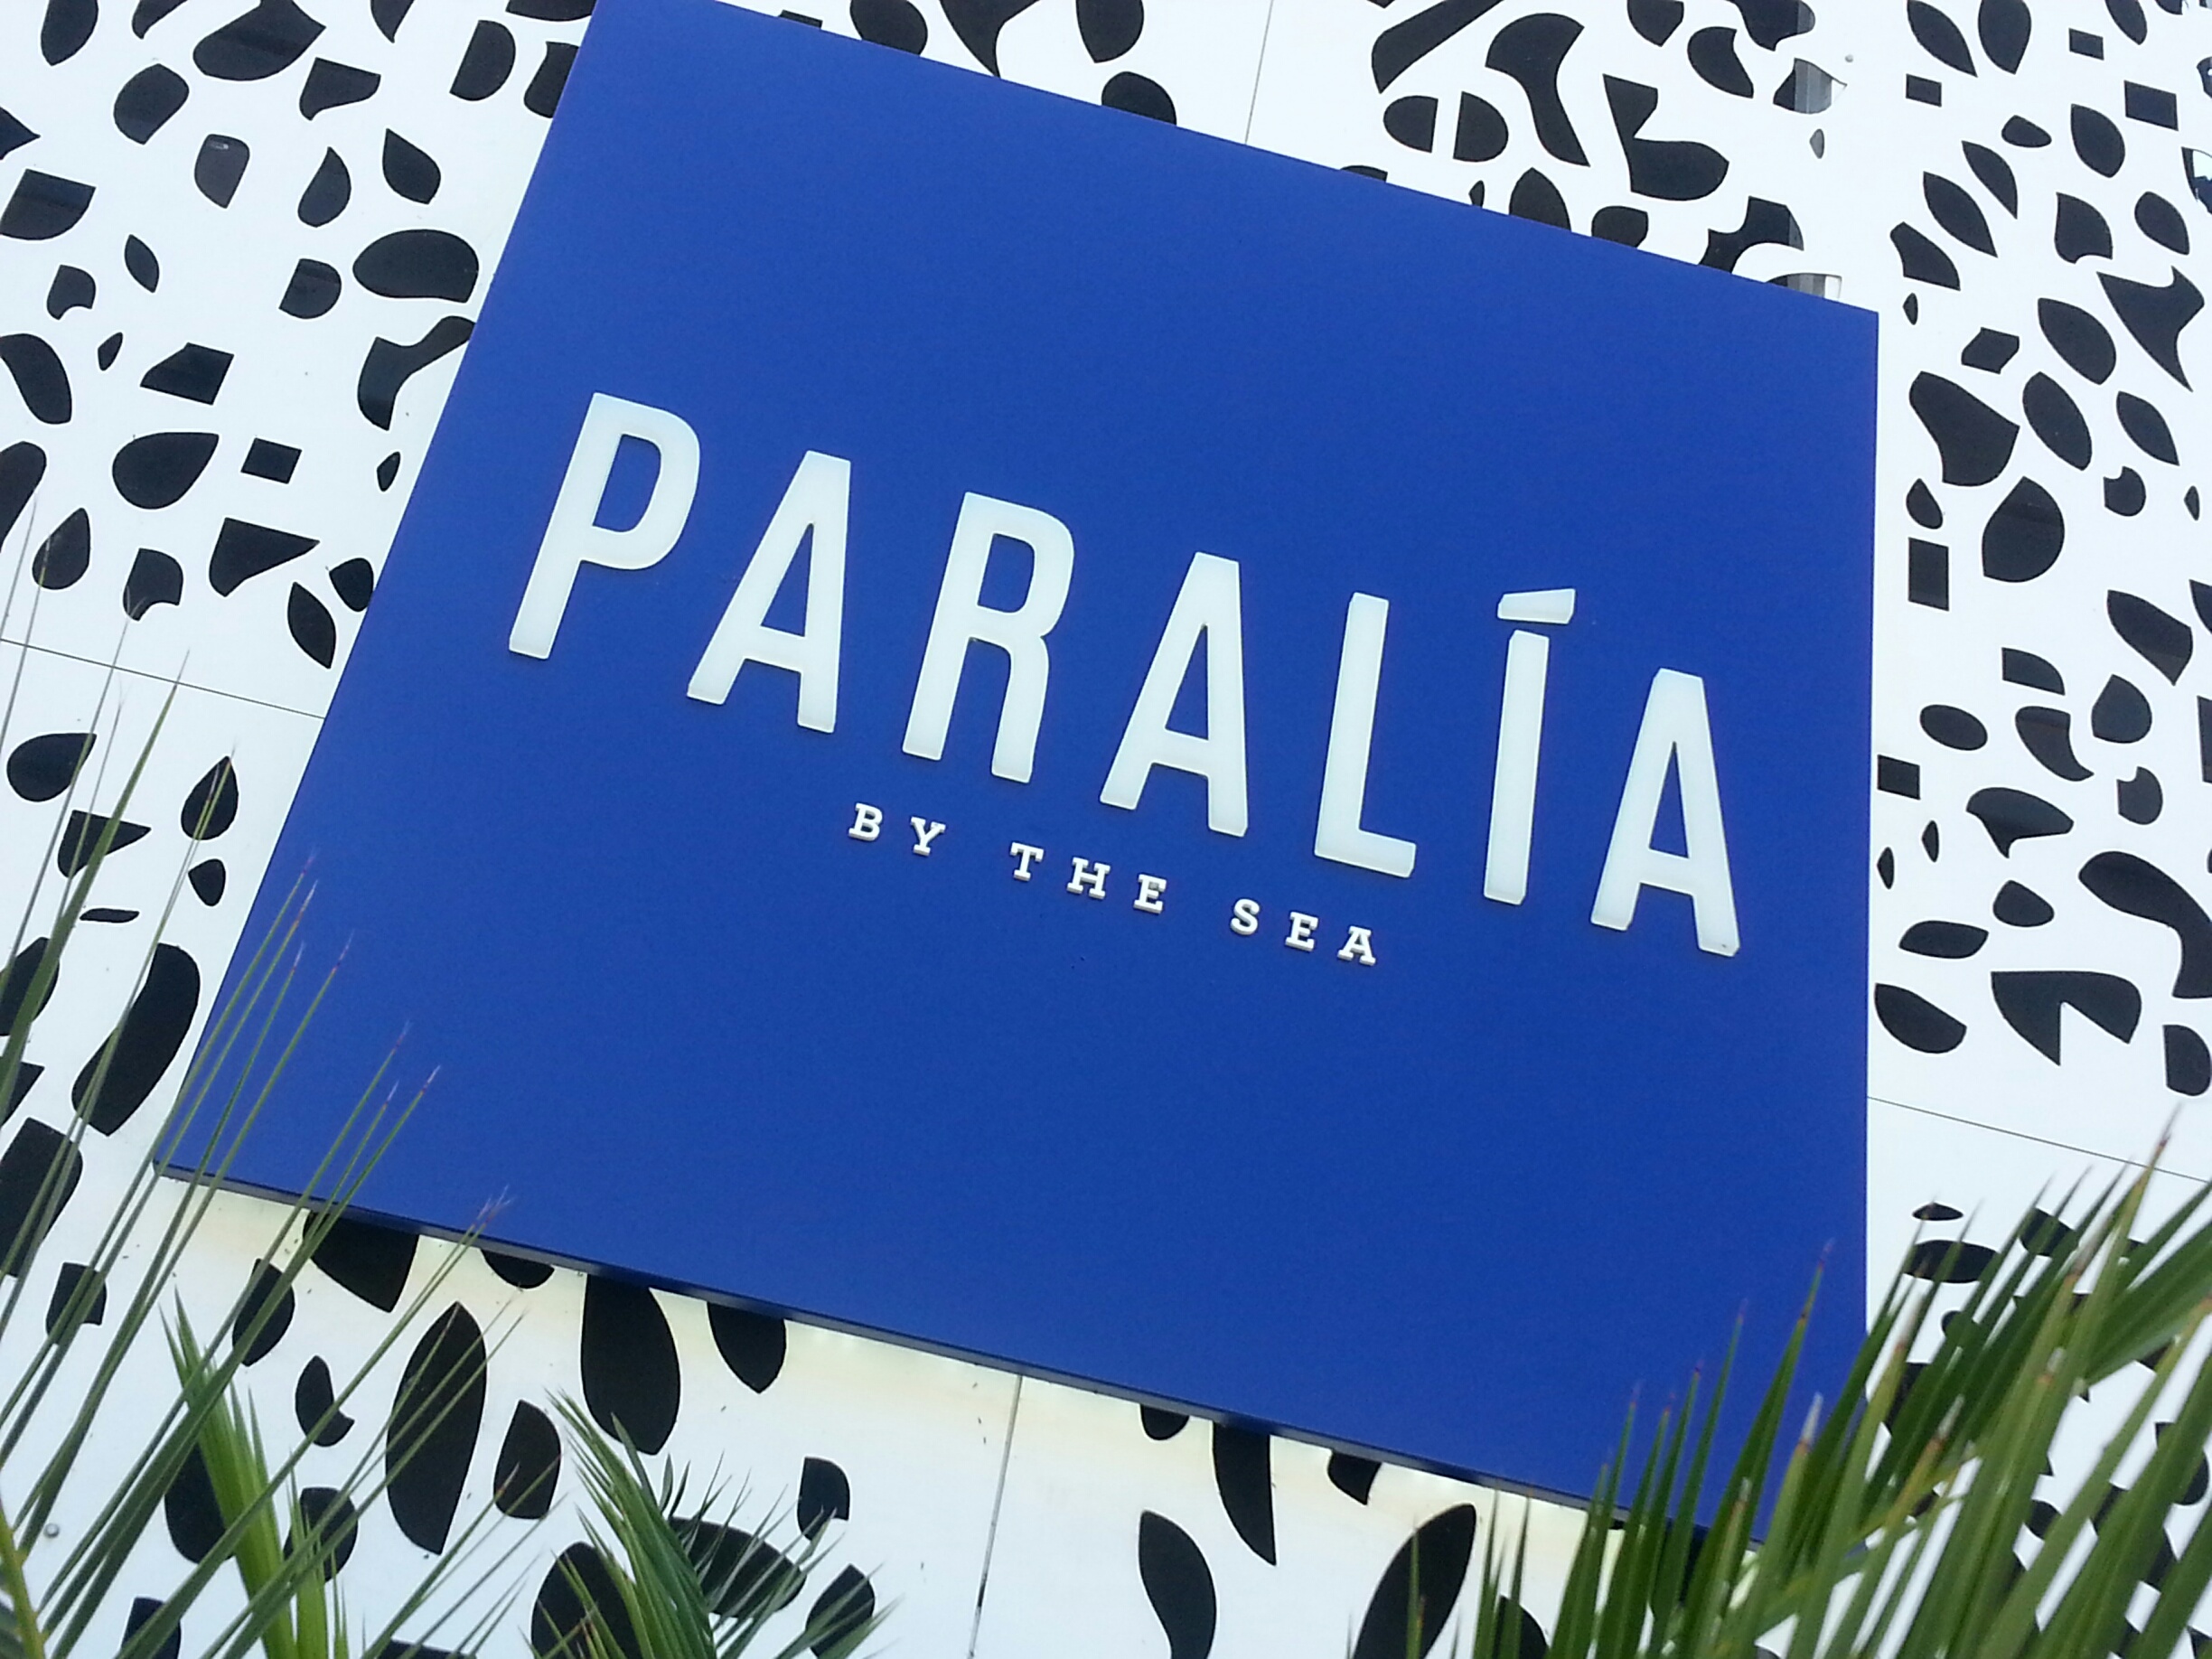 Paralia Restaurant